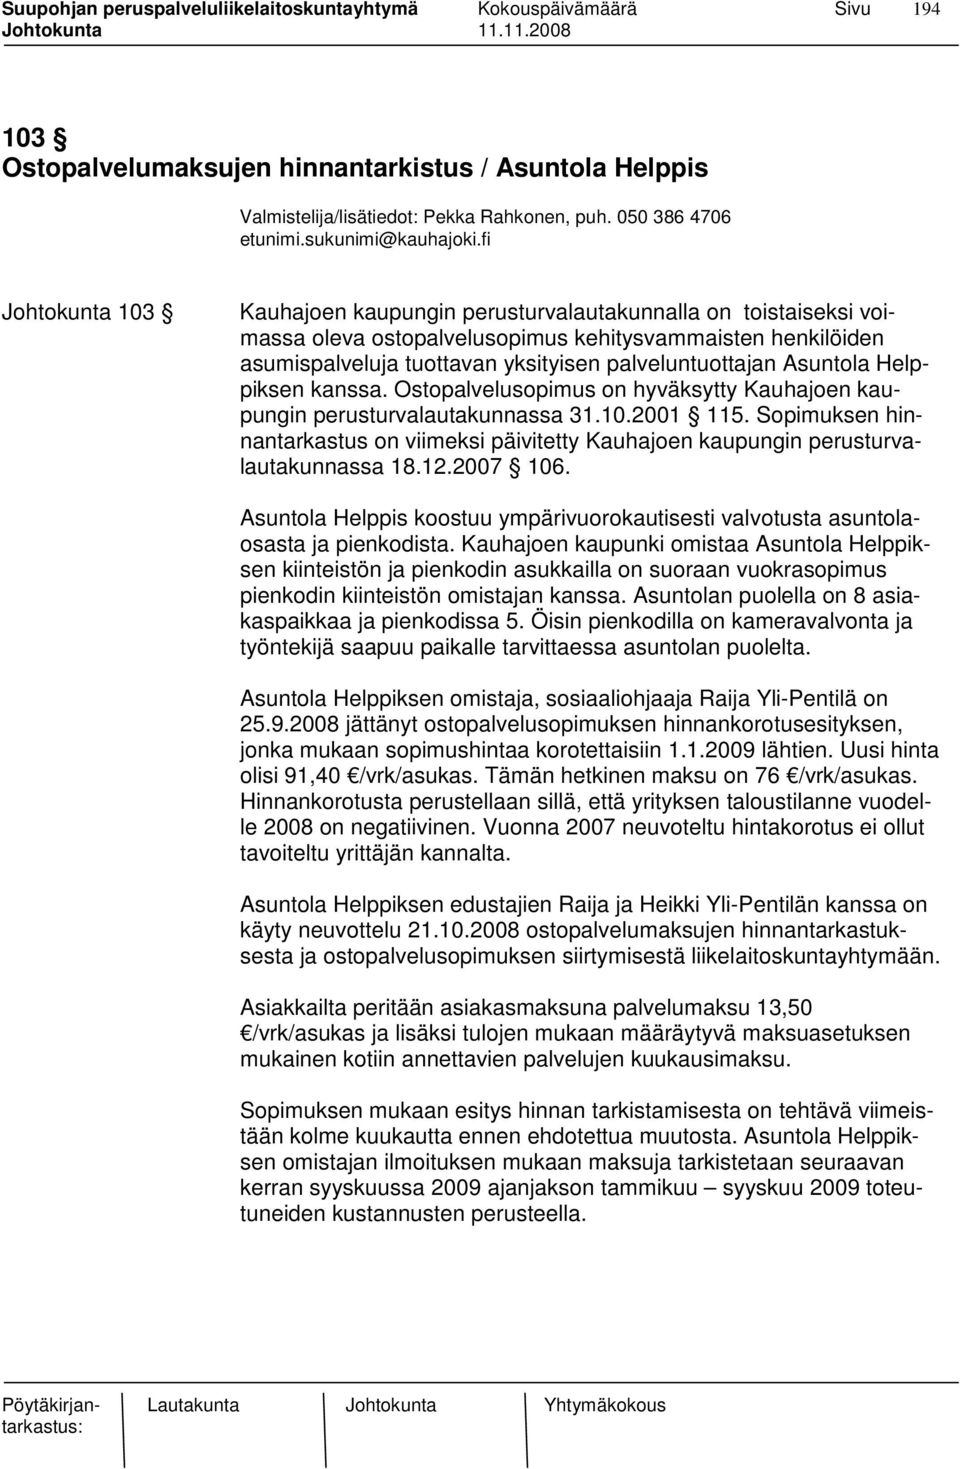 Asuntola Helppiksen kanssa. Ostopalvelusopimus on hyväksytty Kauhajoen kaupungin perusturvalautakunnassa 31.10.2001 115.